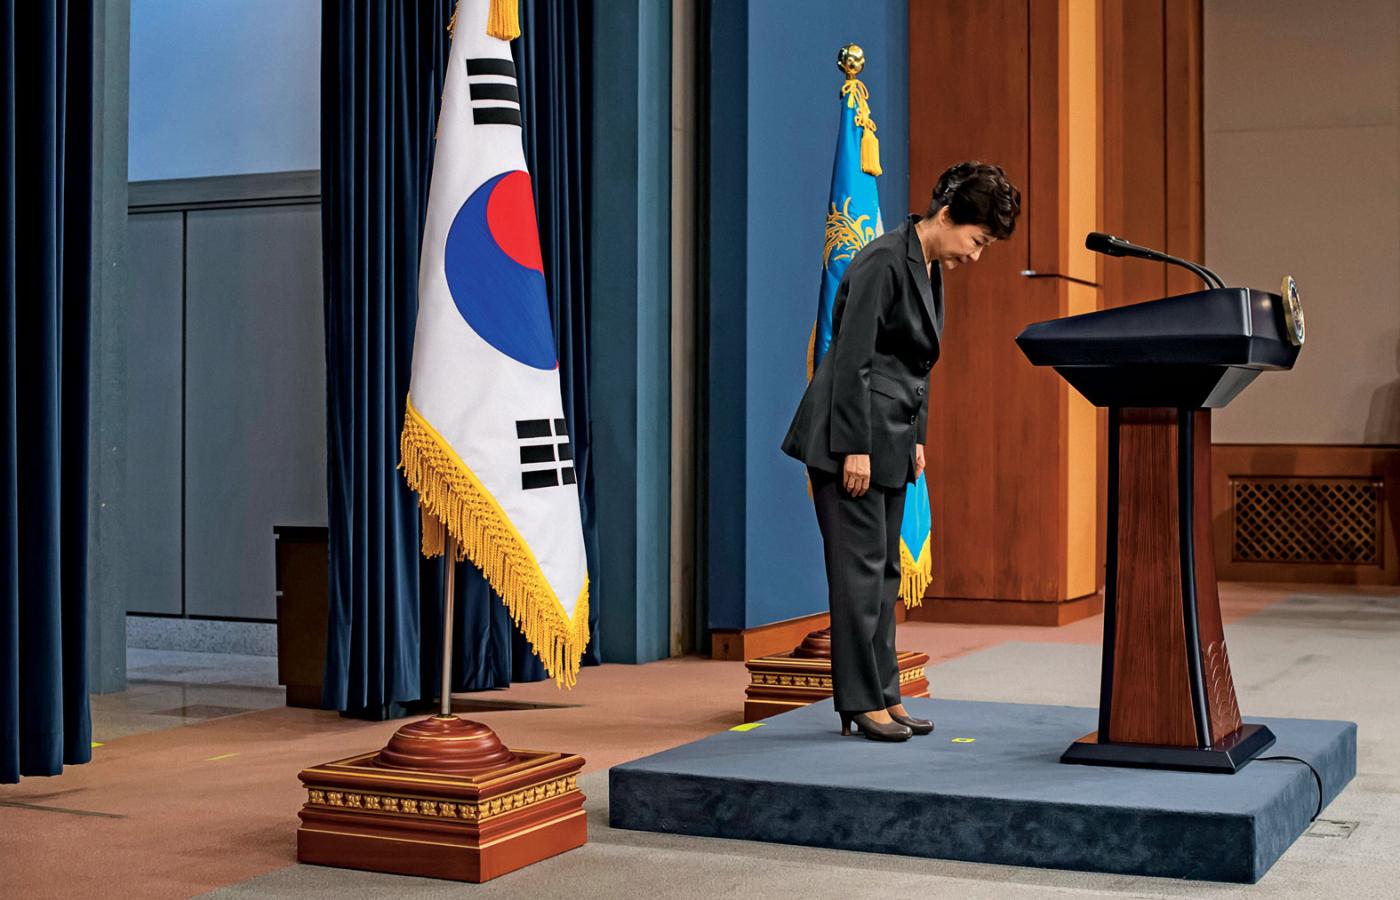 Prezydent Korei Płd. Park Geun-hye przeprosiła naród w oficjalnym wystąpieniu, ale parlament odebrał jej władzę.